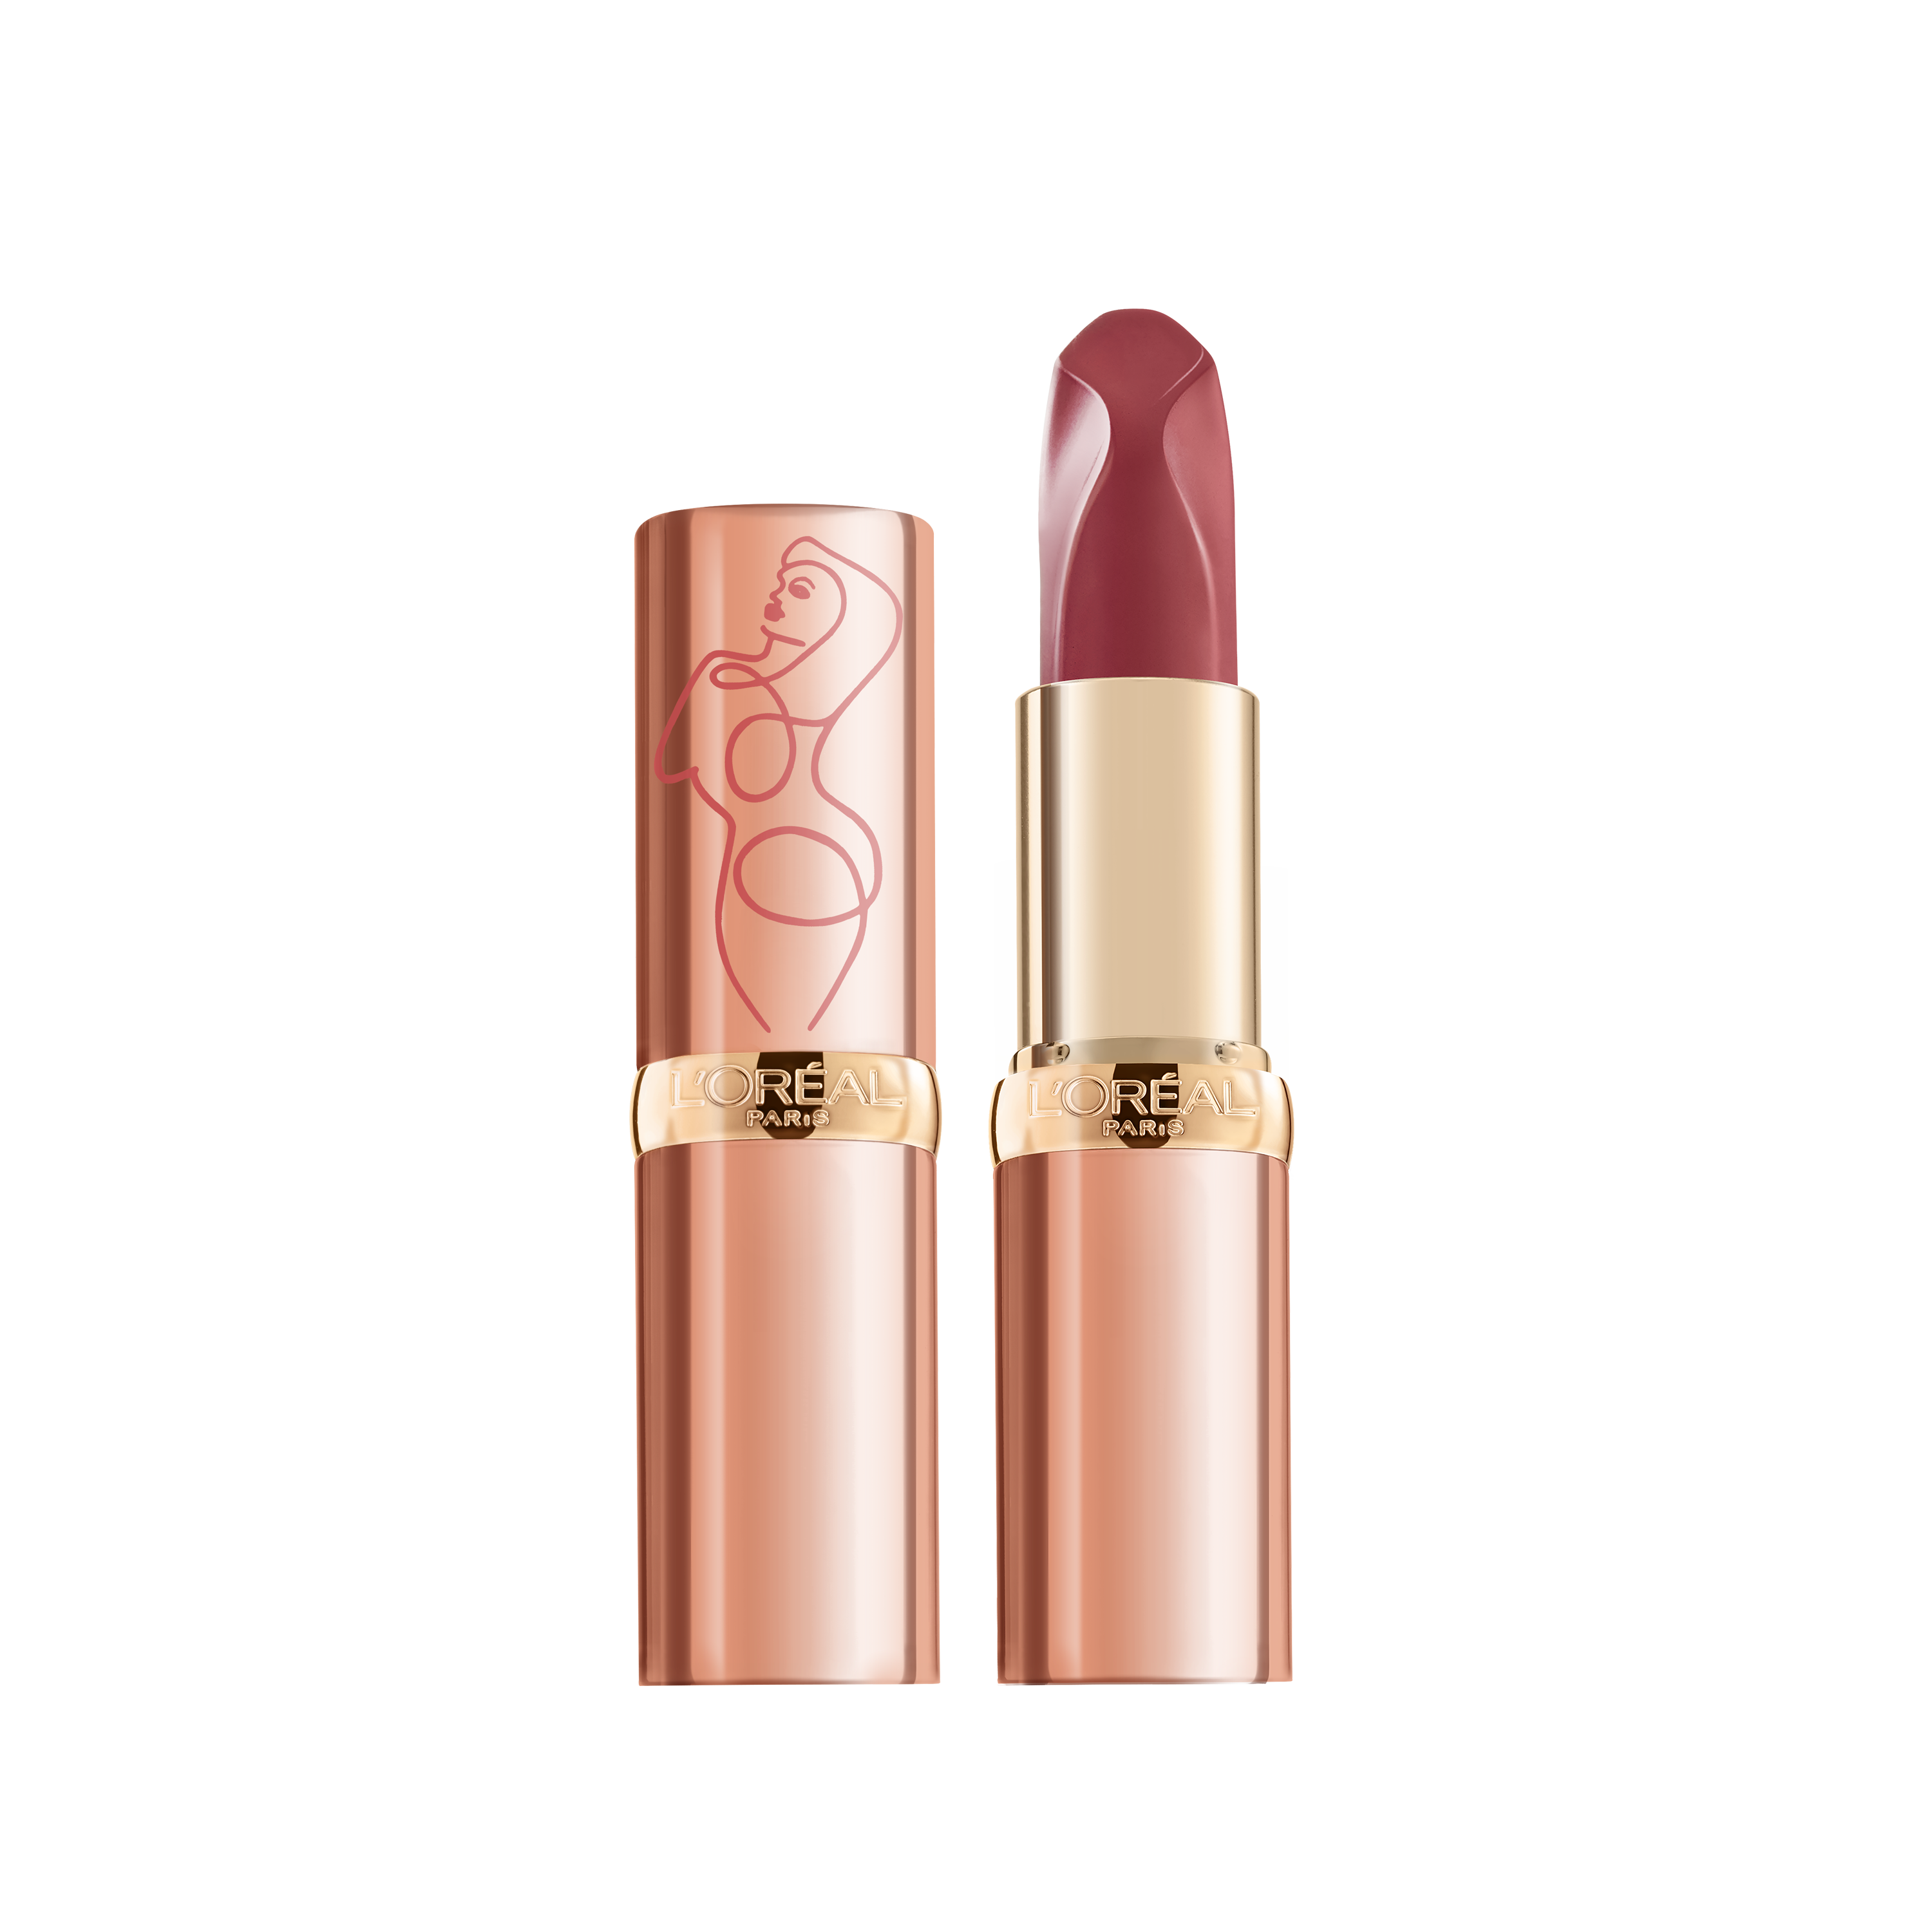 L'Oréal Color Riche Nude Insolents Lipstick - 177 Nu Autentique - Nude - Verzorgende Lippenstift - 8,9ml